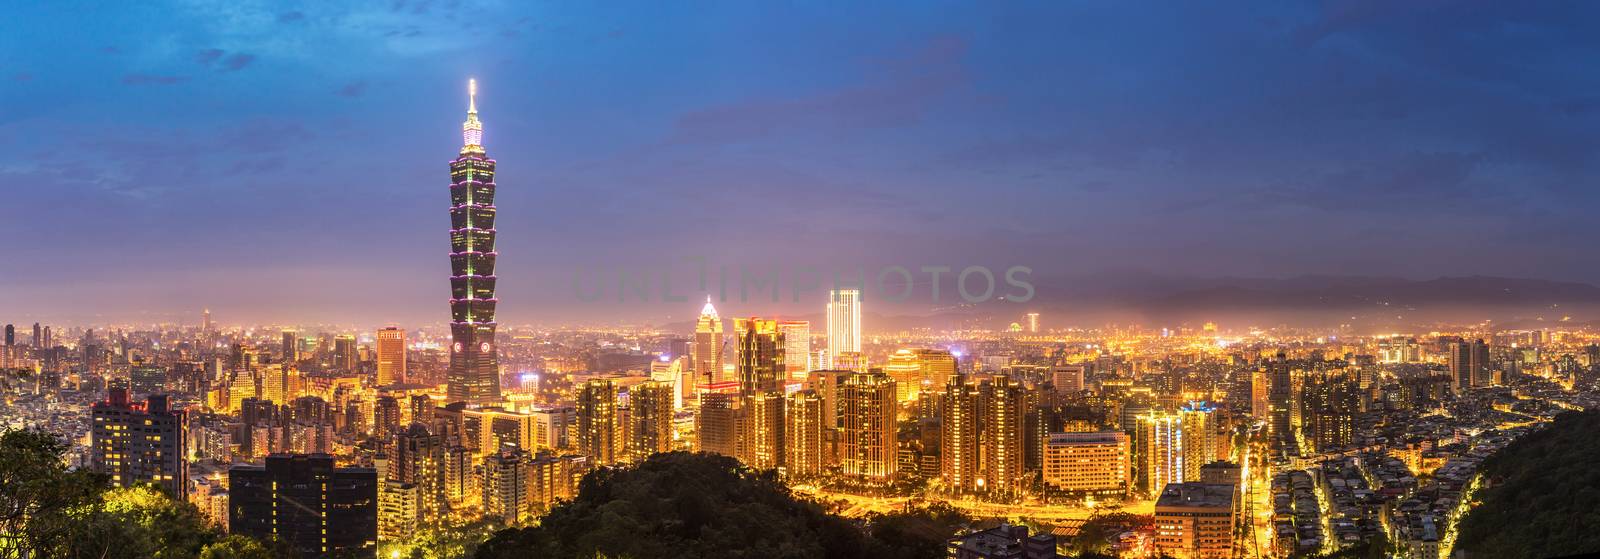 Taipei skyline Panorama by vichie81